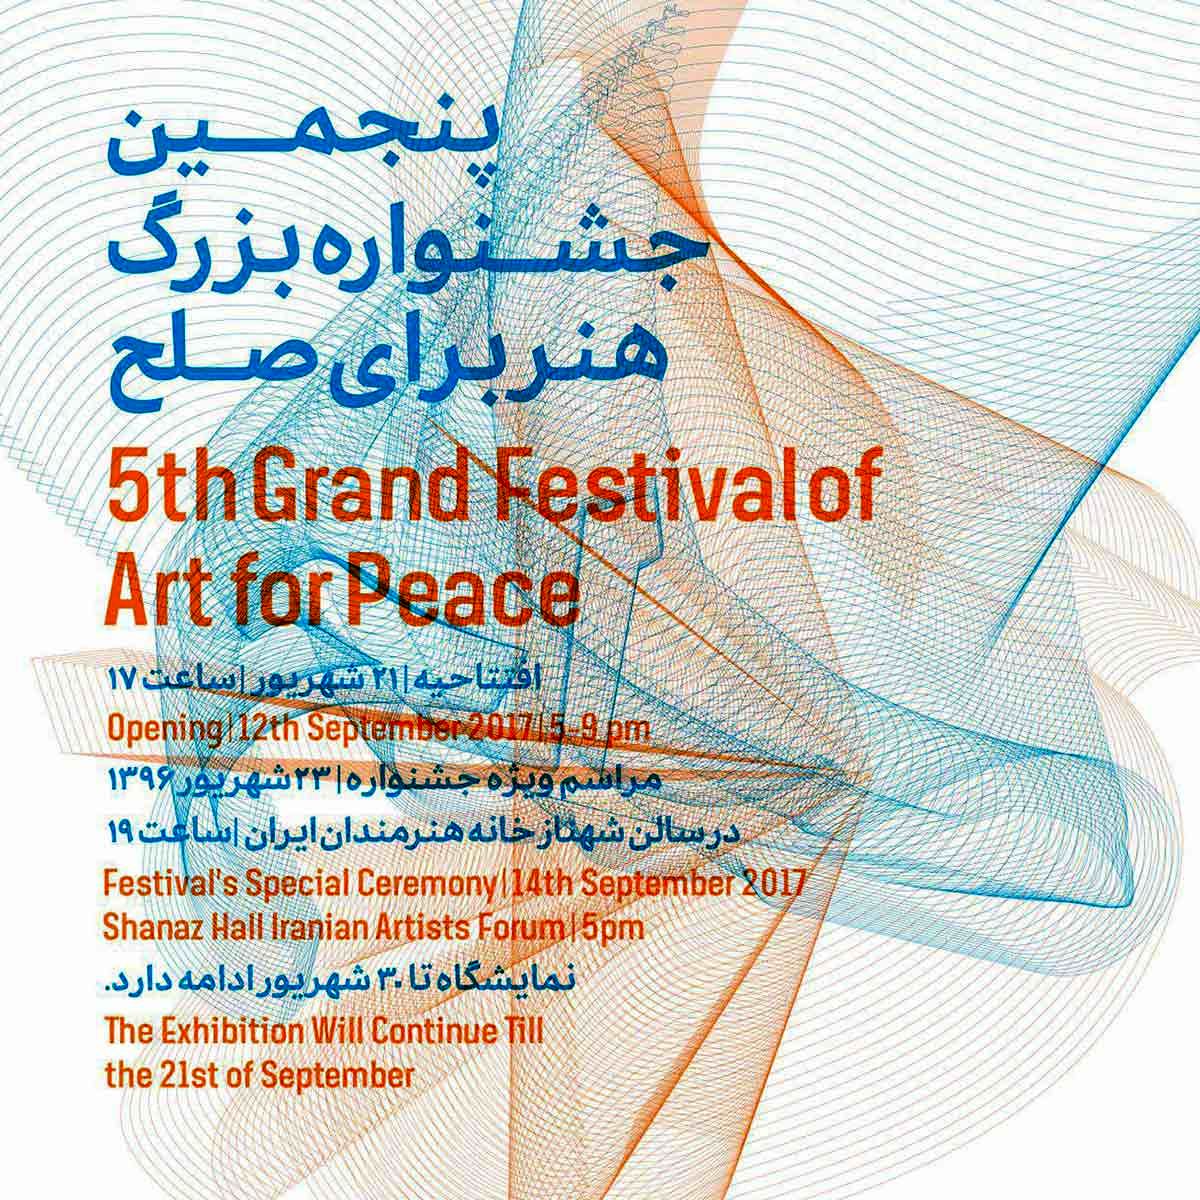 جشنواره هنر برای صلح / Art for Peace Festival